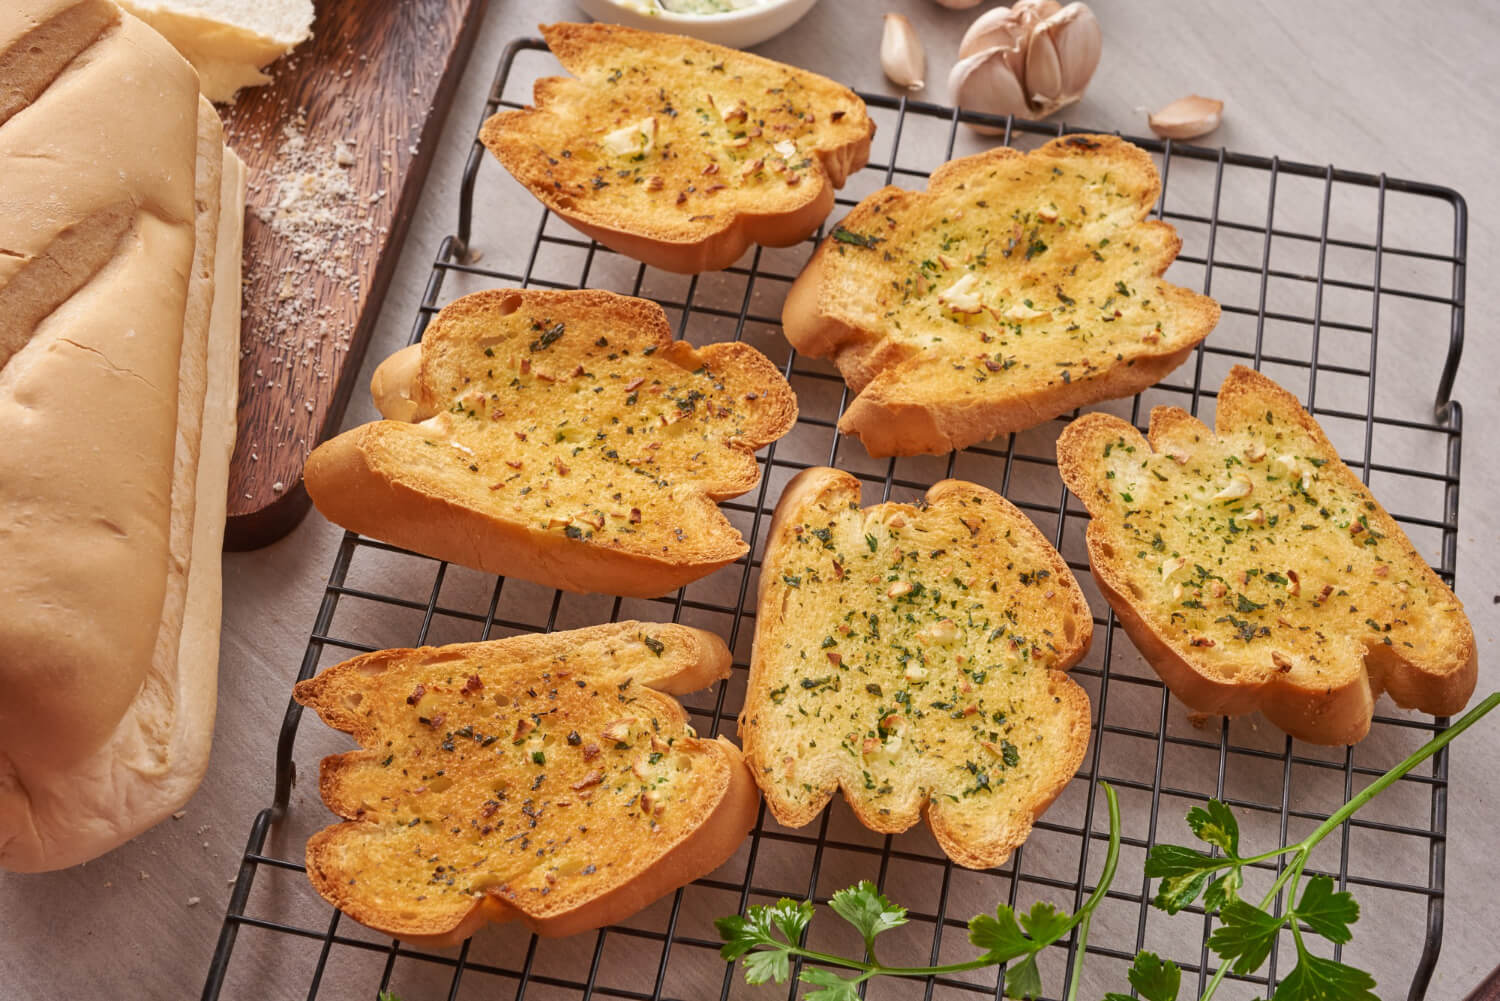 delicious garlic bread! but is it healthy?